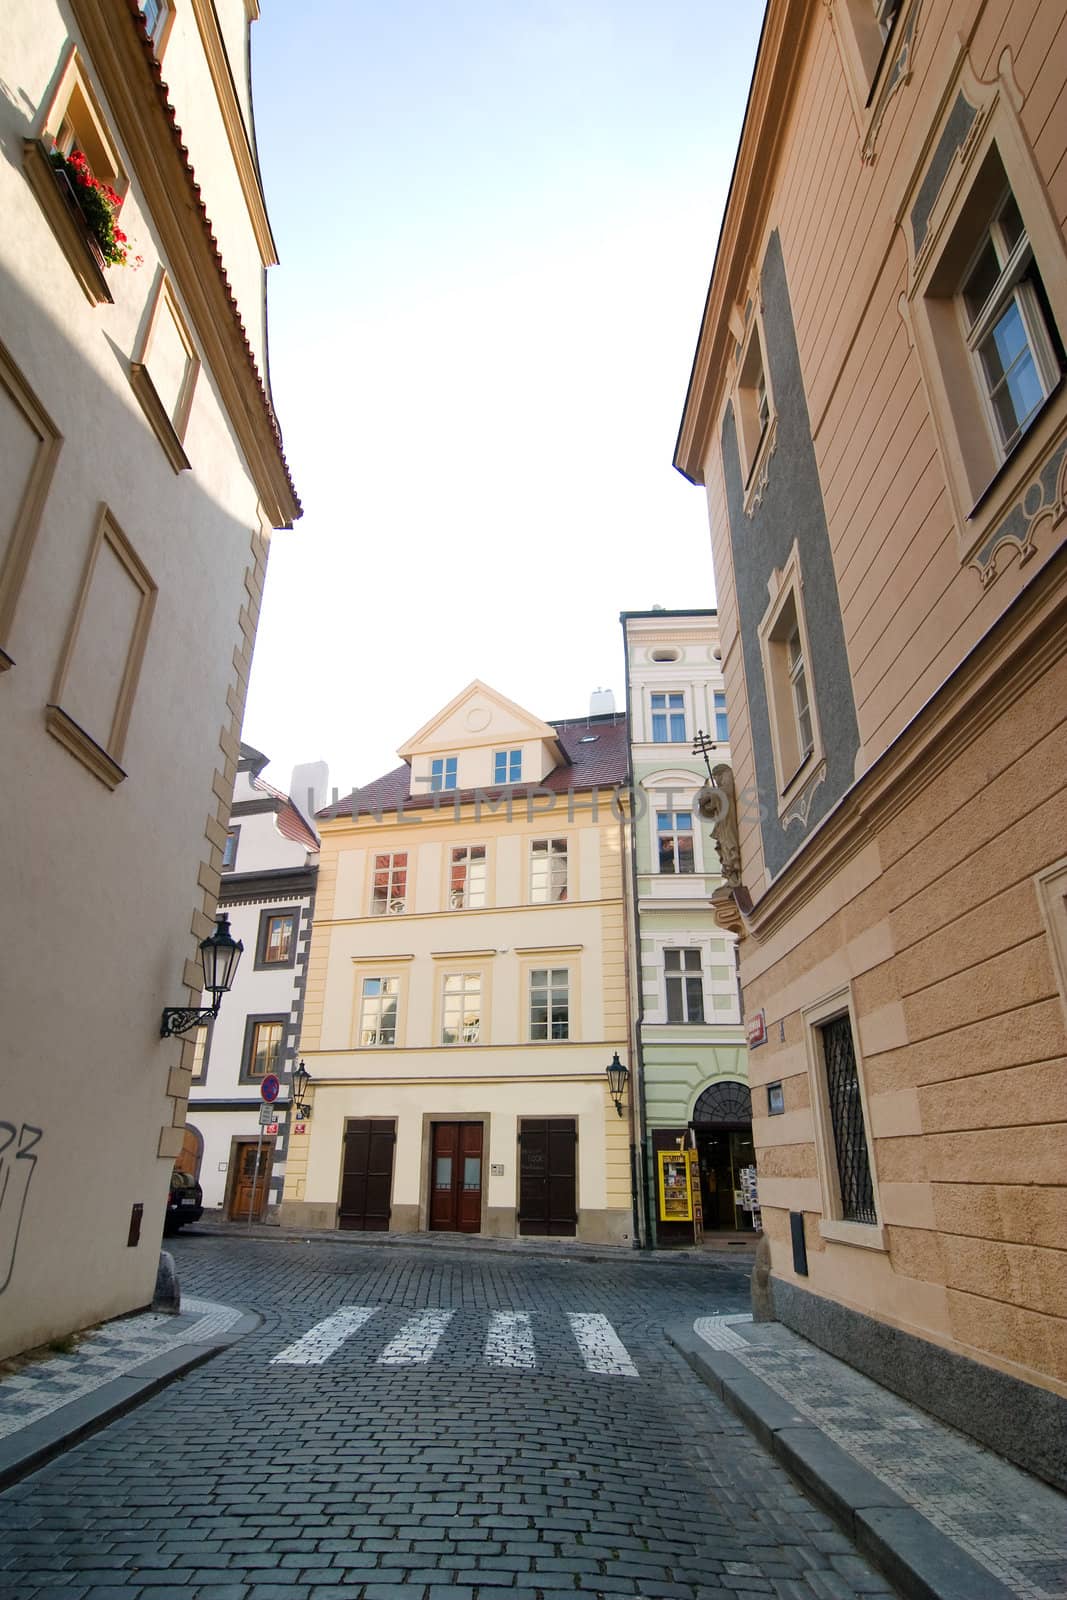 A small quaint street in Prague, Czech Republic.